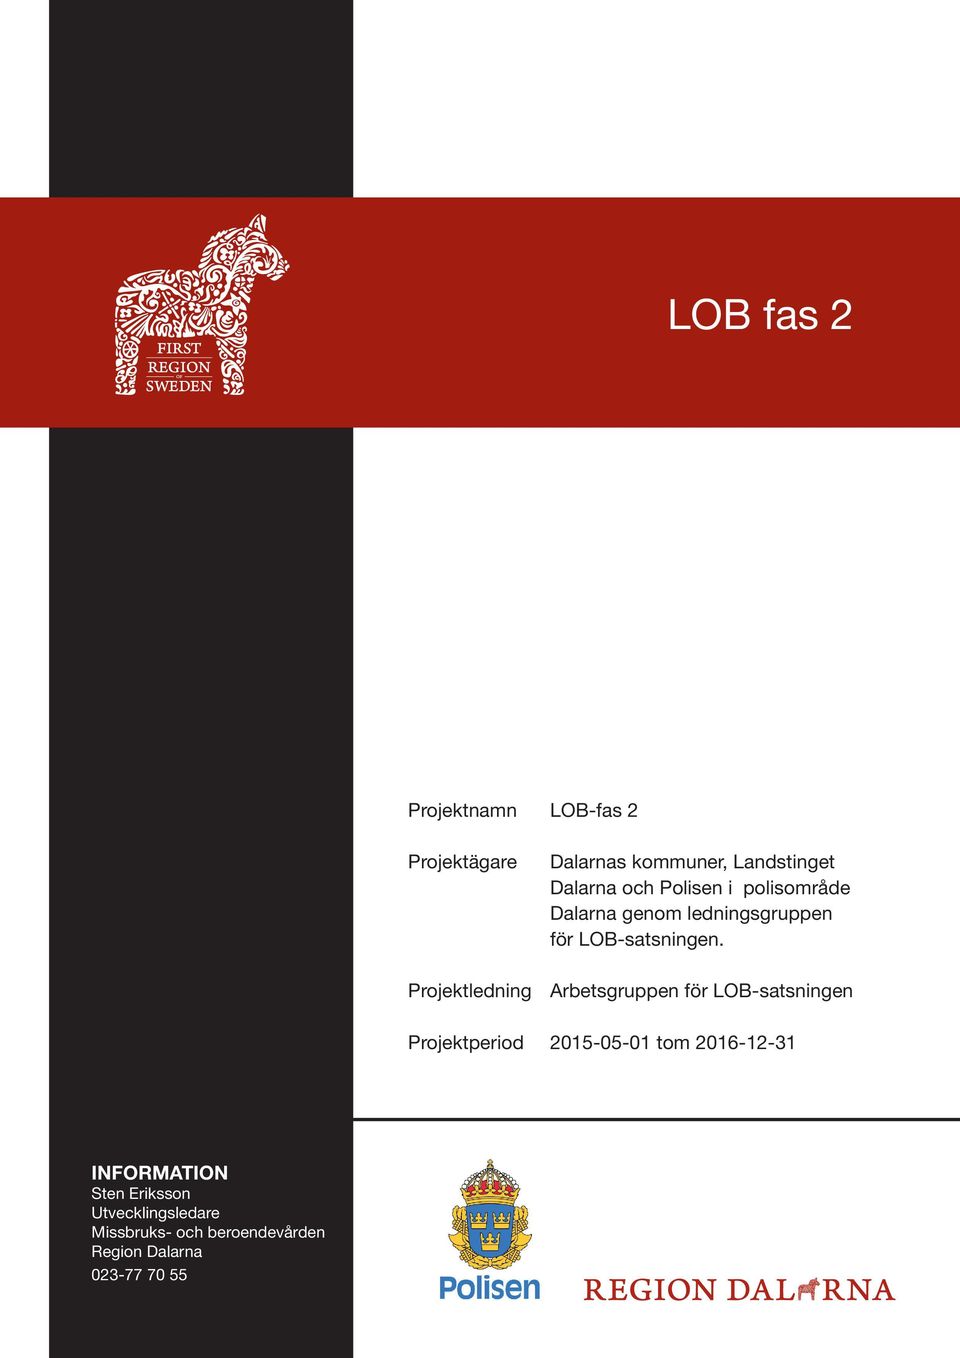 Projektledning Arbetsgruppen för LOB-satsningen Projektperiod 2015-05-01 tom 2016-12-31